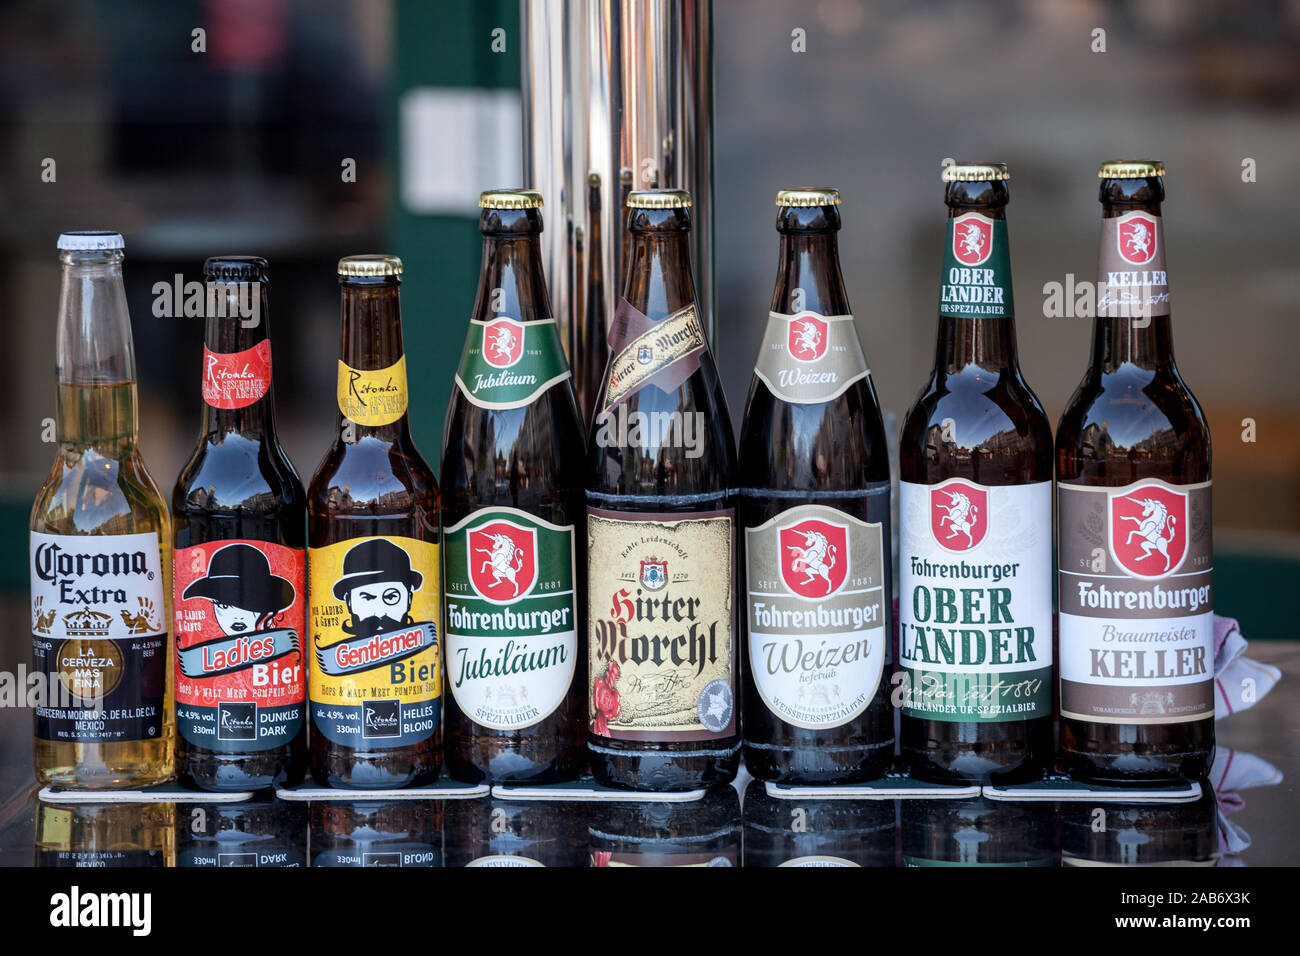 VIENNA, Austria - 6 Novembre 2019: diverse bottiglie di birra Fohrenburger sul display tra le altre birre austriache. Fohrenburger bier è una birra prodotta ho Foto Stock